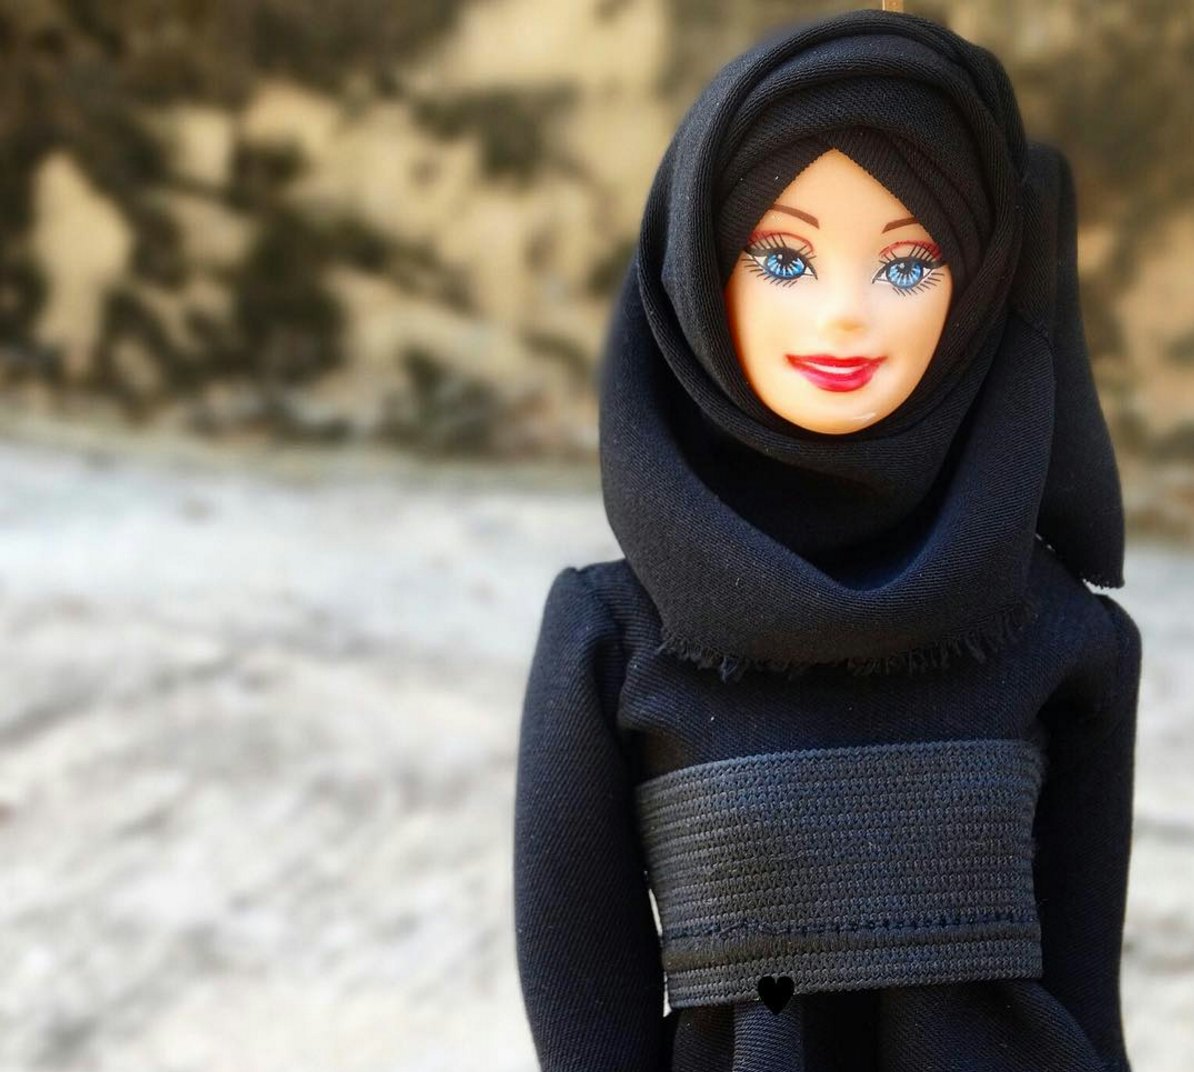 barbie in hijab